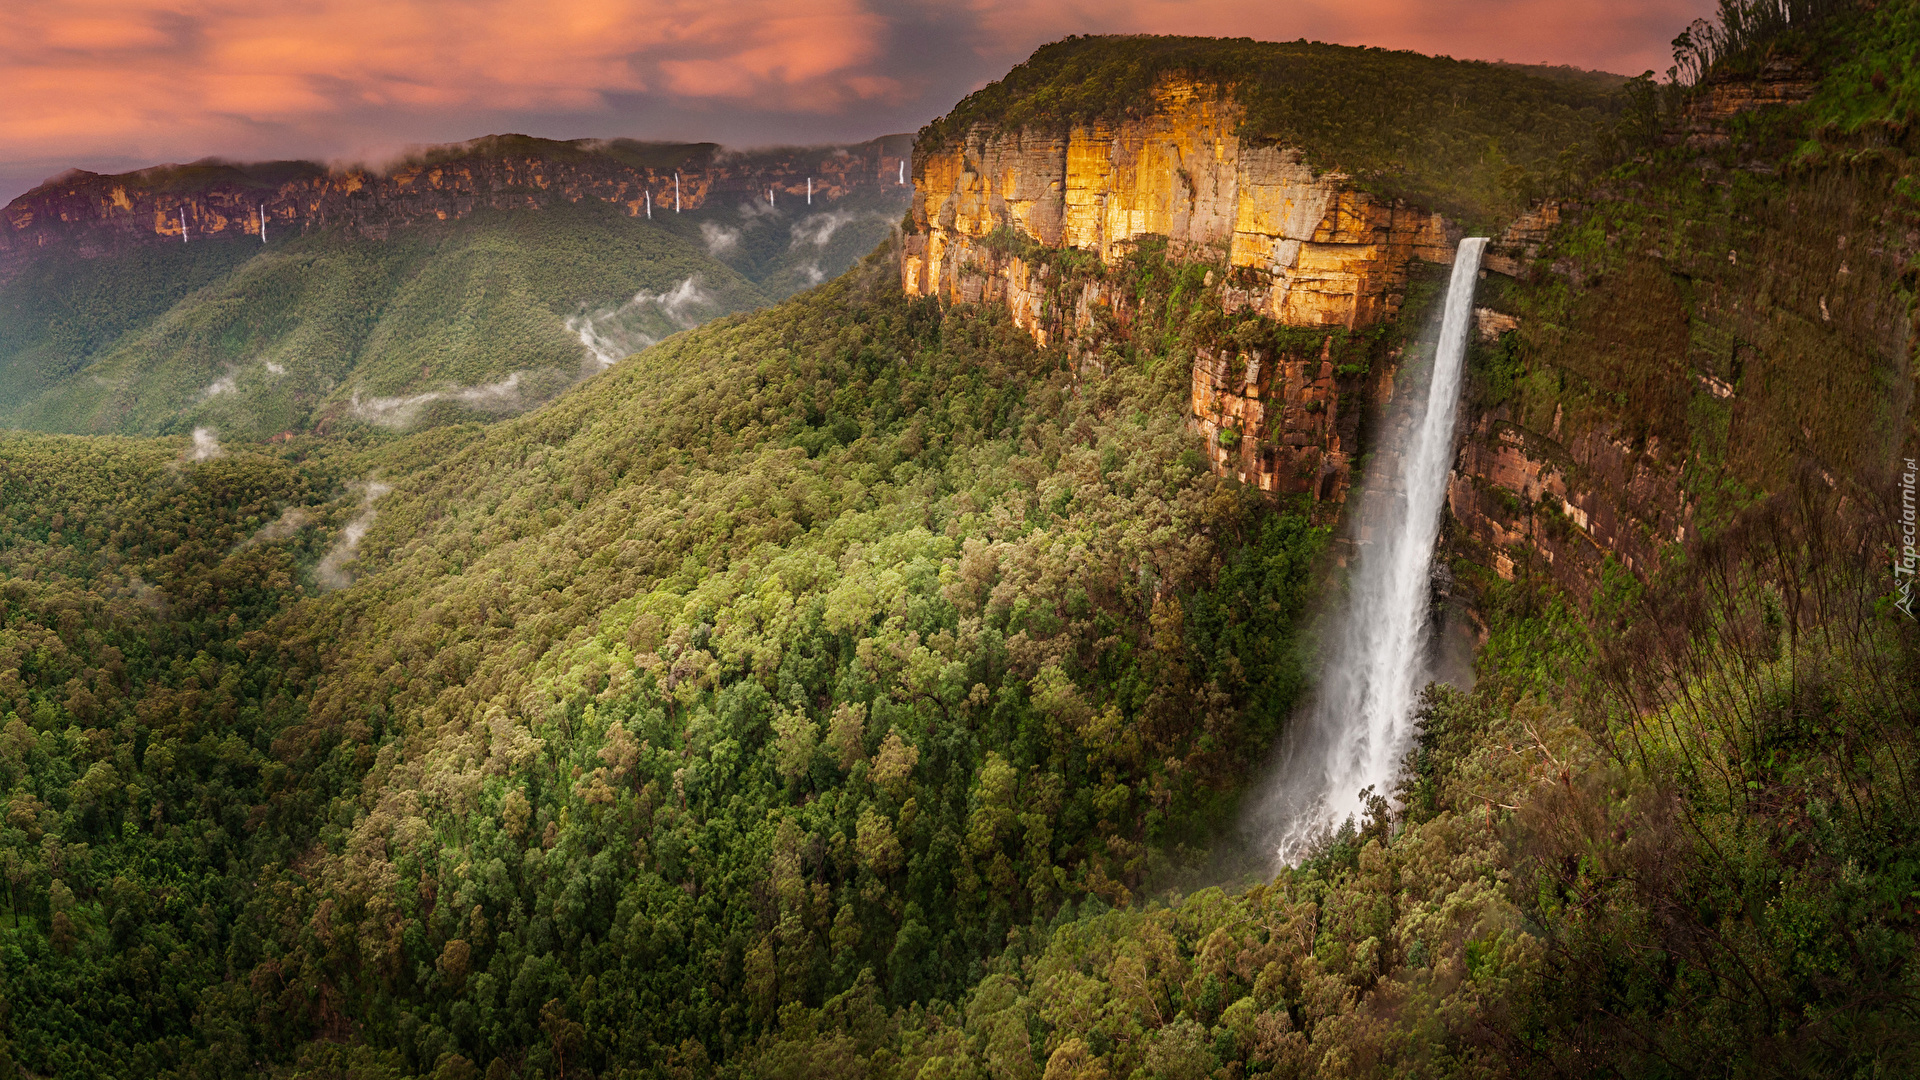 Skały, Góry Błękitne, Lasy, Drzewa, Wodospad, Govets Leap Falls, Zachód słońca, Australia